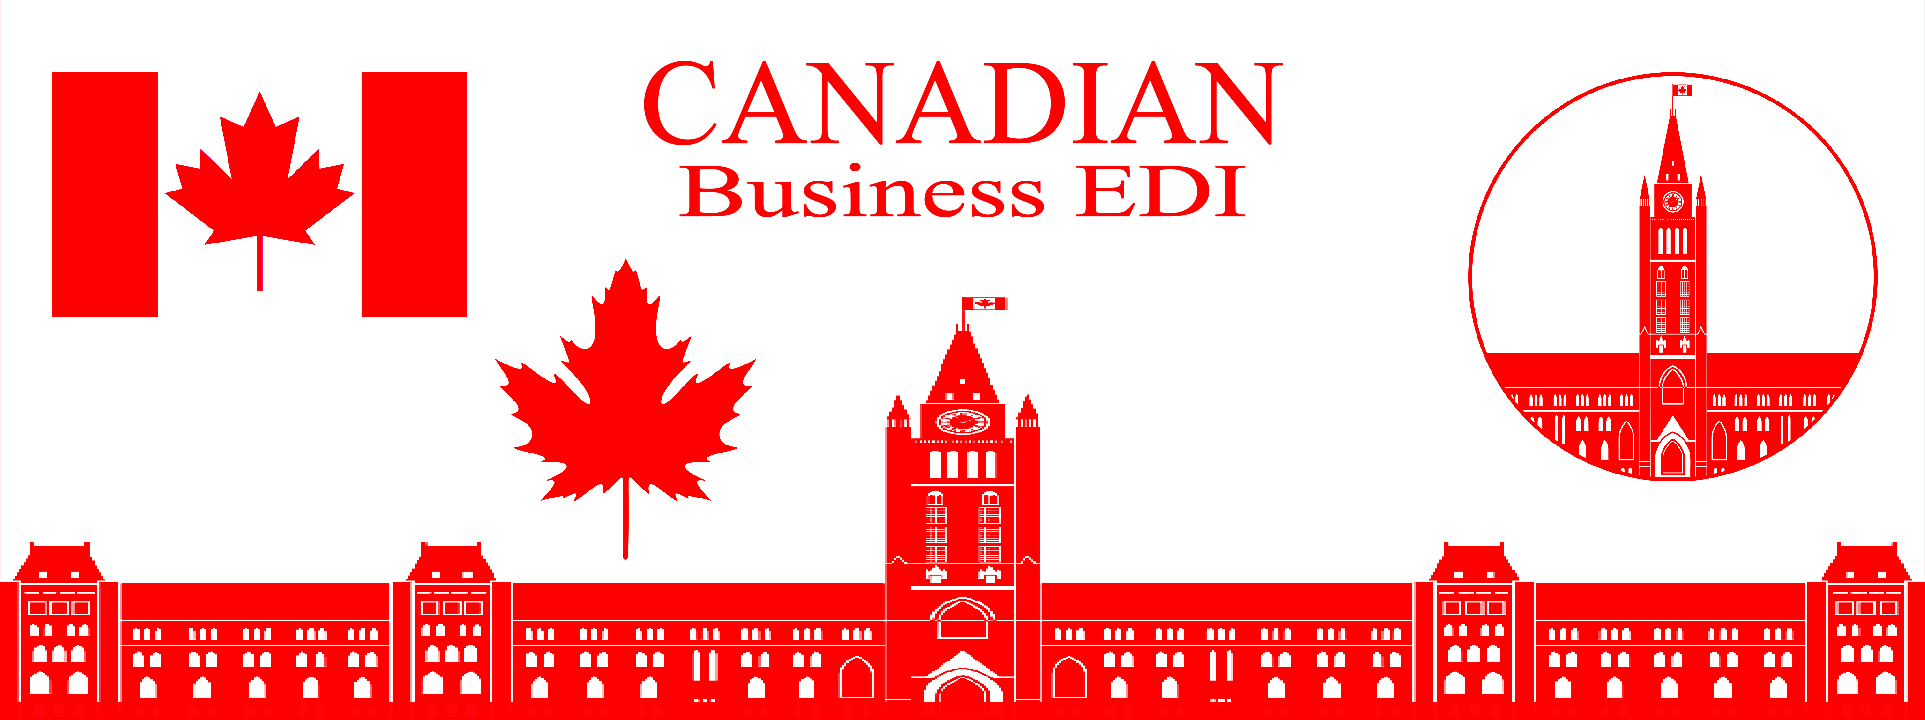 Canada Revenue Agency EDI